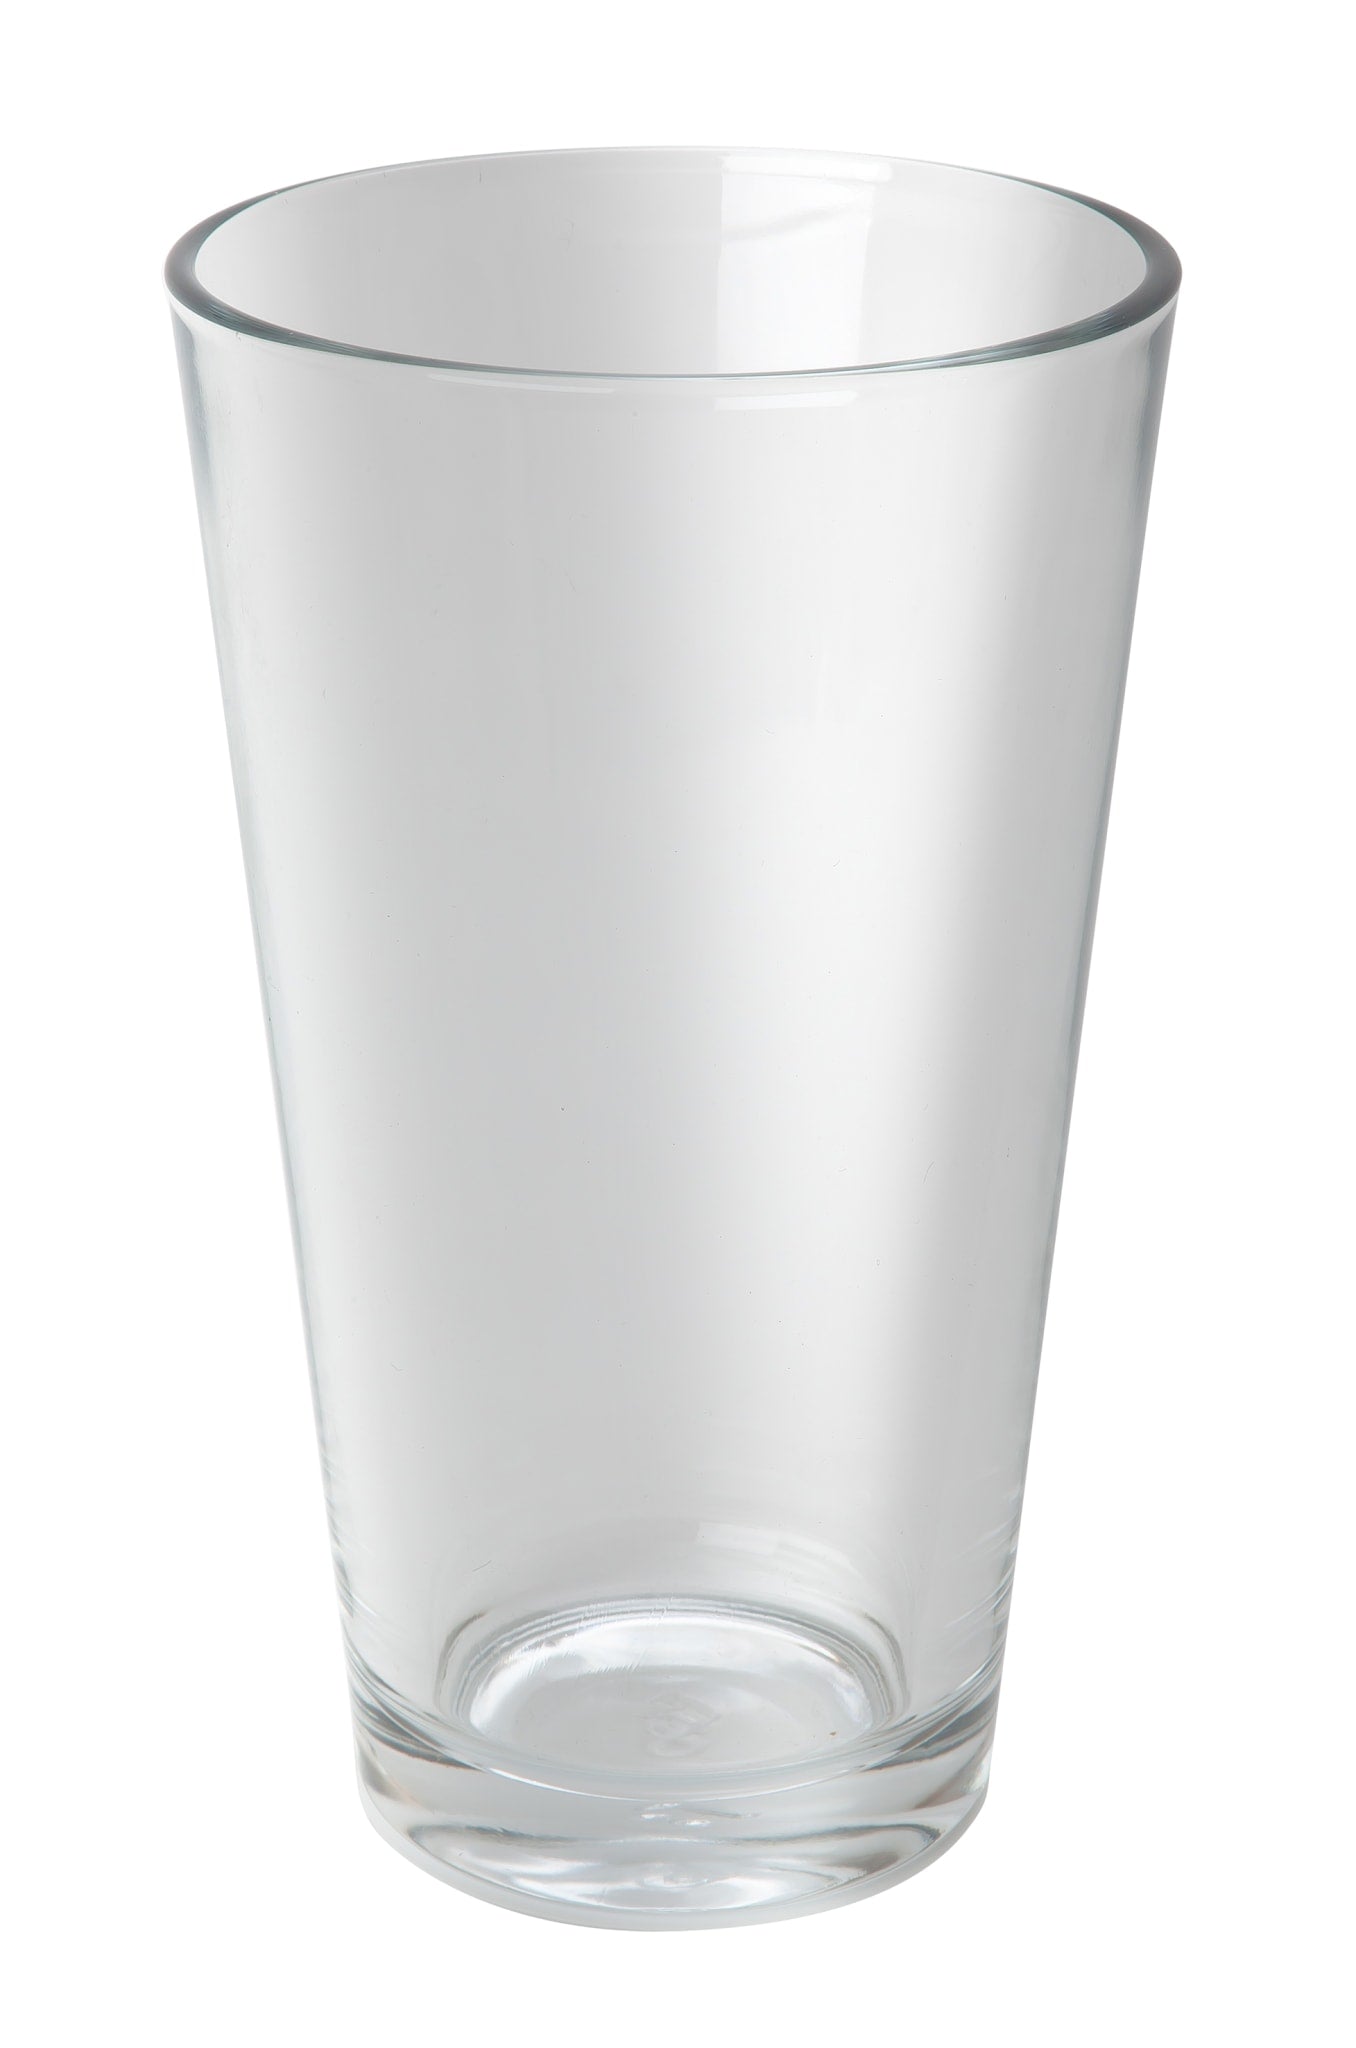 Klassisches Boston-Glas, ideal zum Mischen von Cocktails zu Hause oder in Bars.